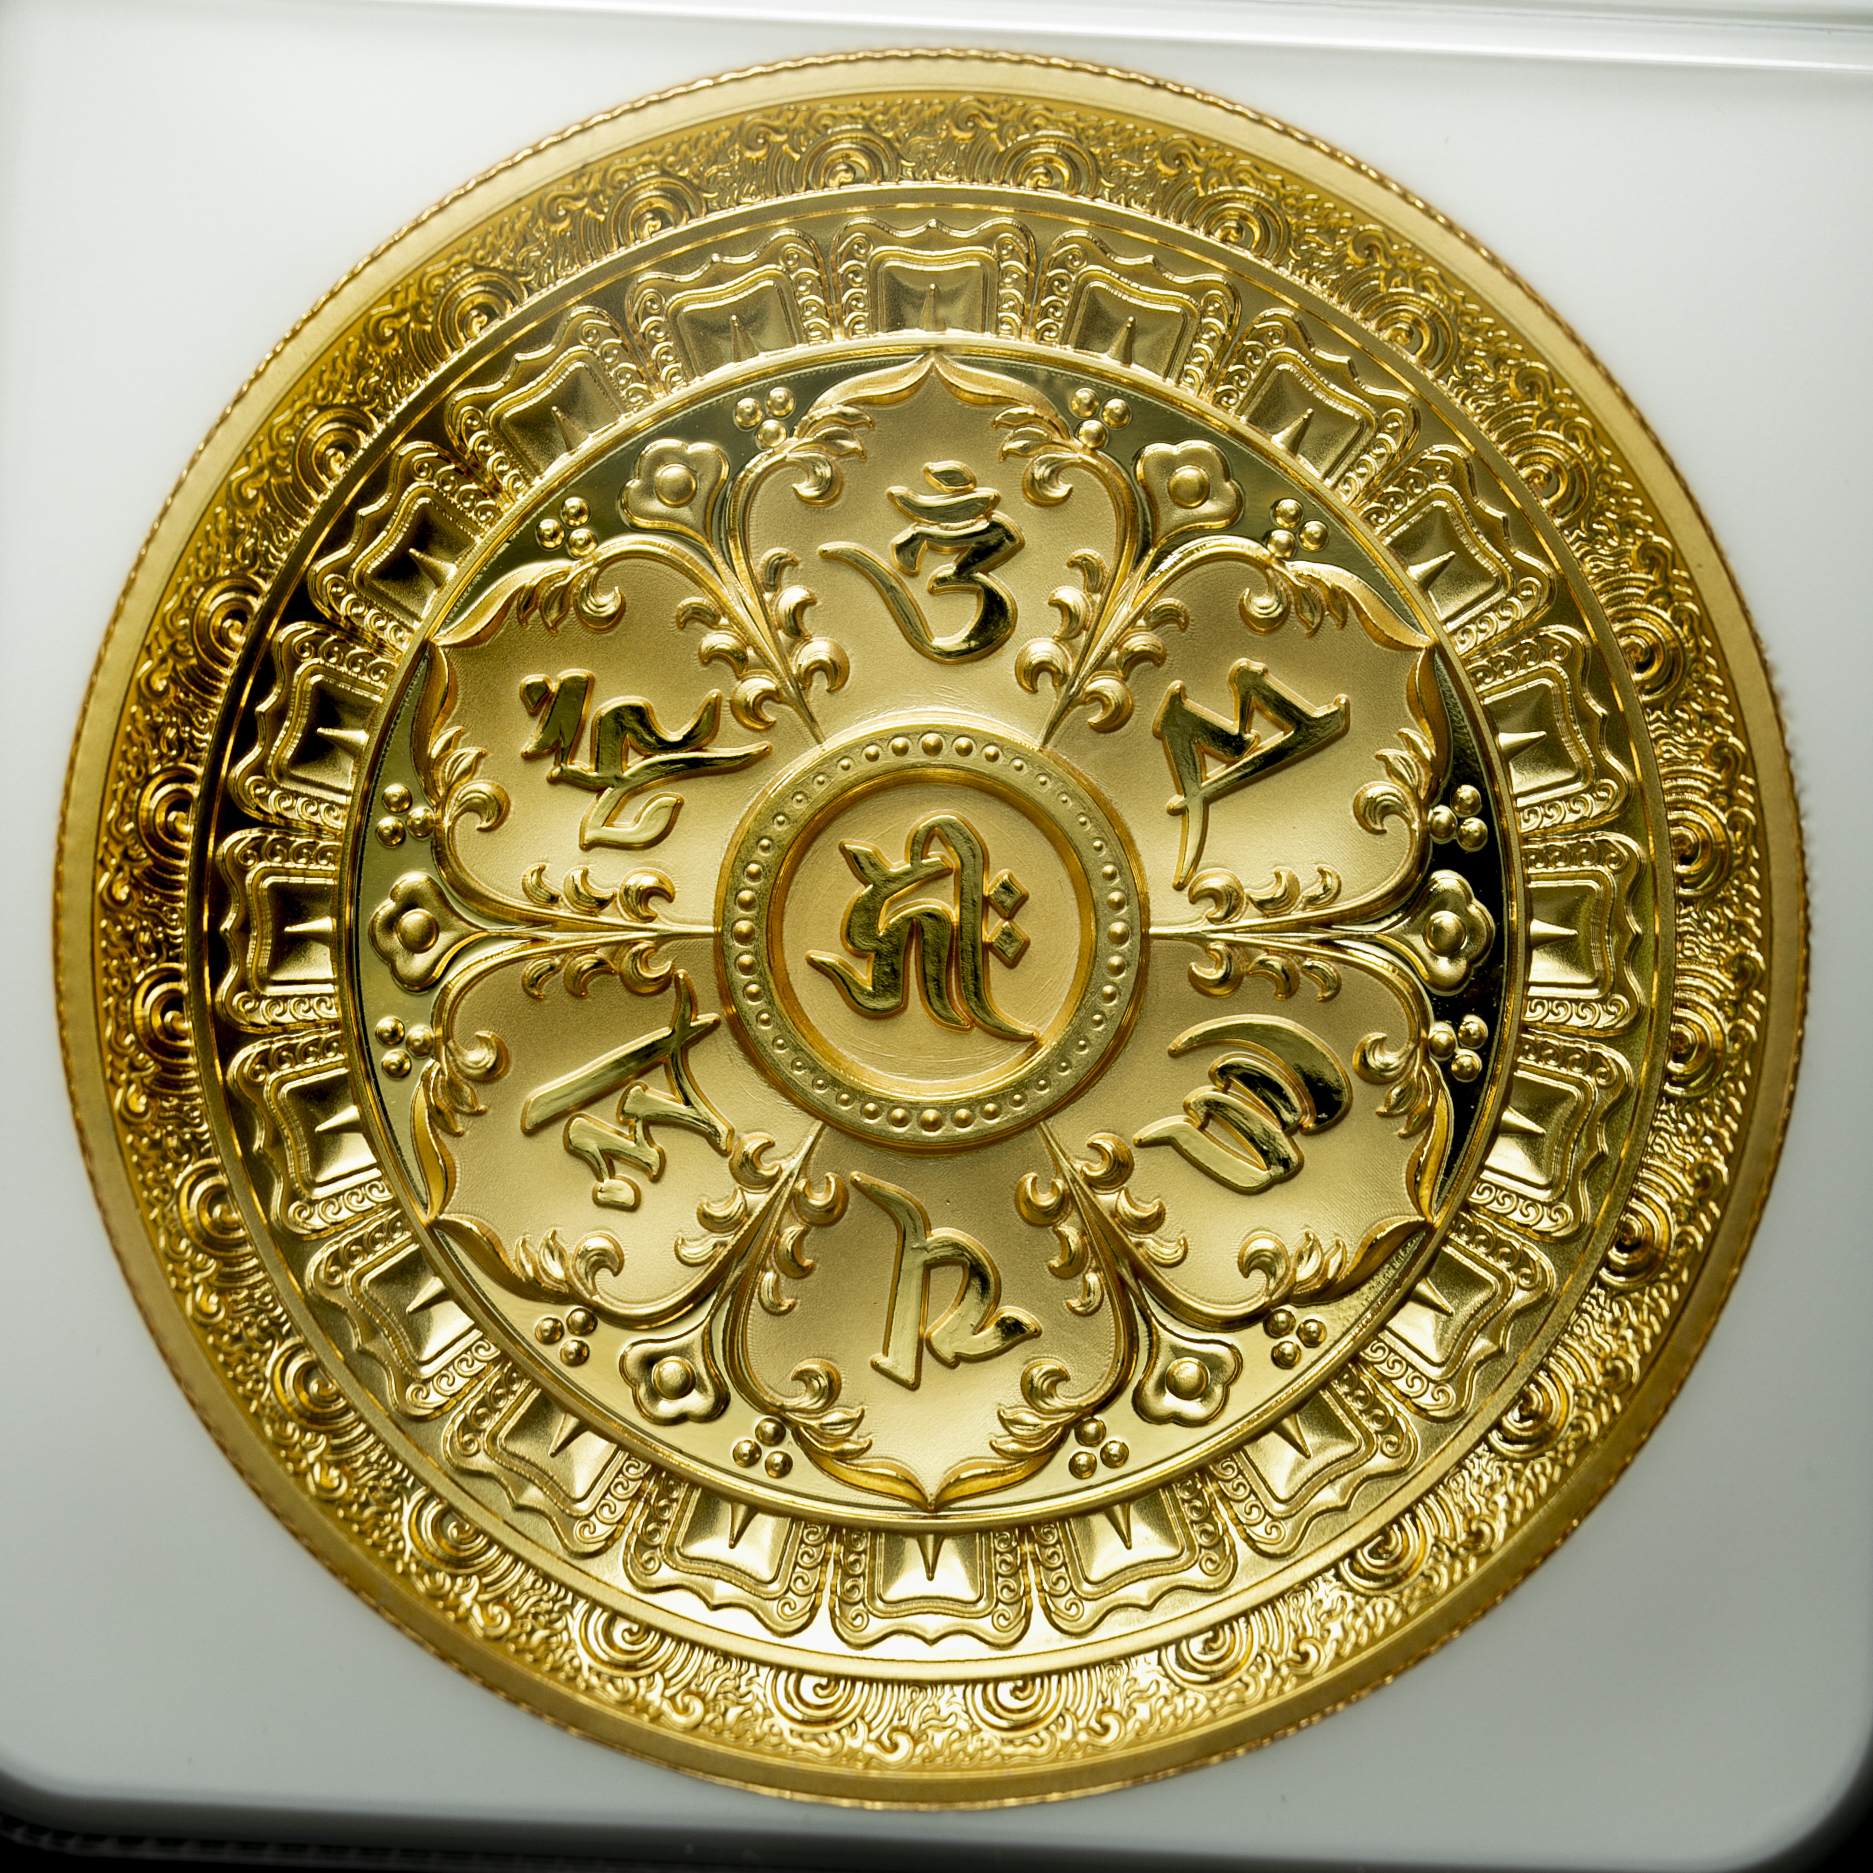 嘉日の小物とアンティークコイン【NGC-PF70 Ultra Cameo】仏教像 金 